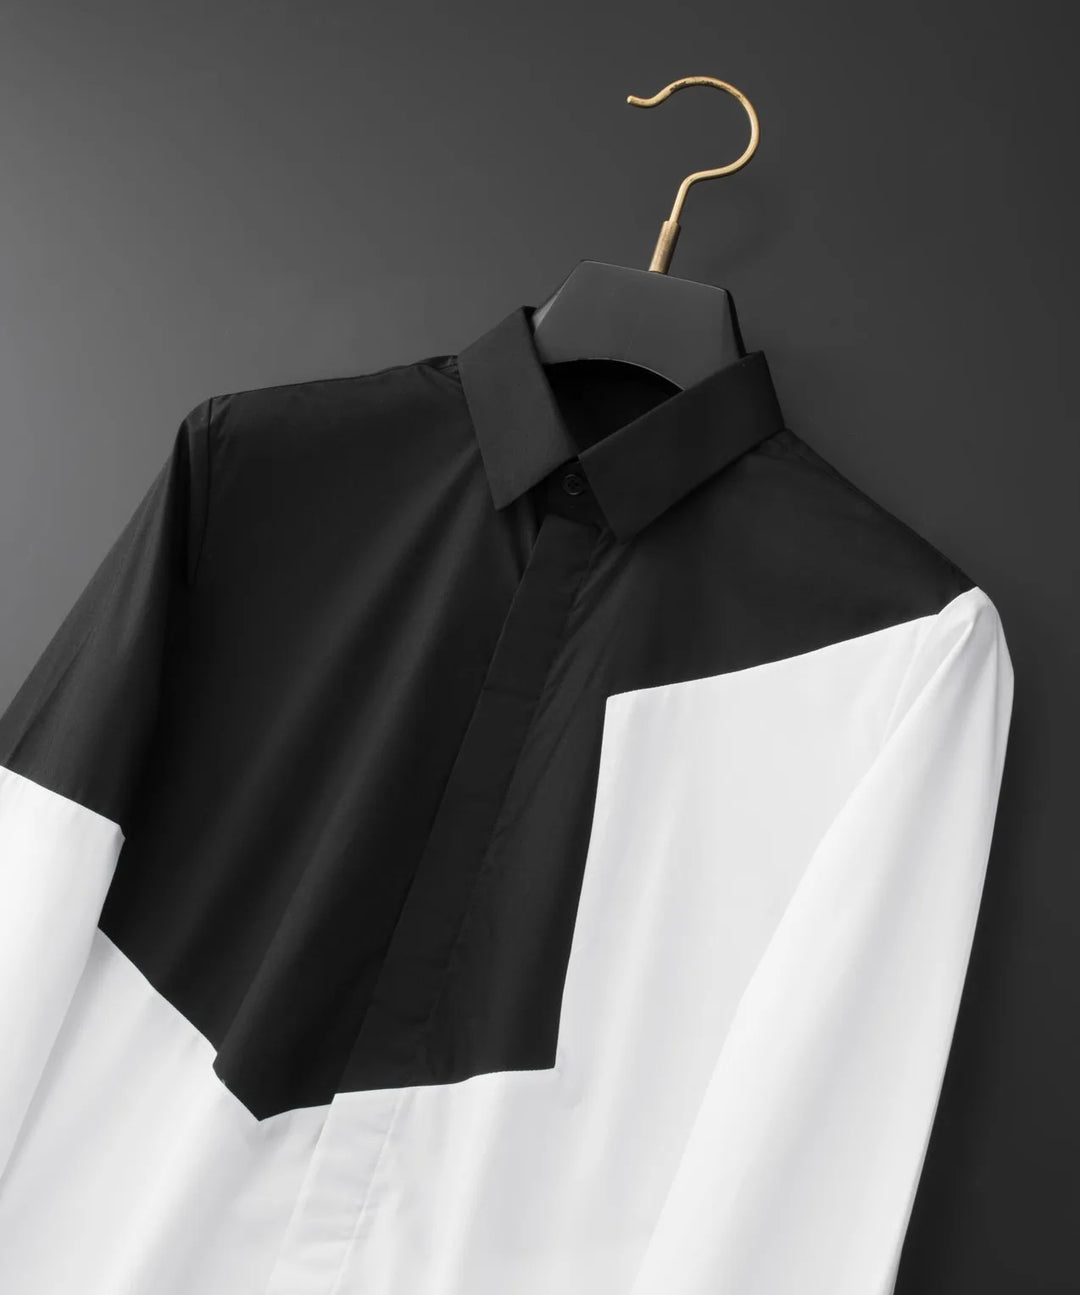 Black and White Stitching Men's Shirt